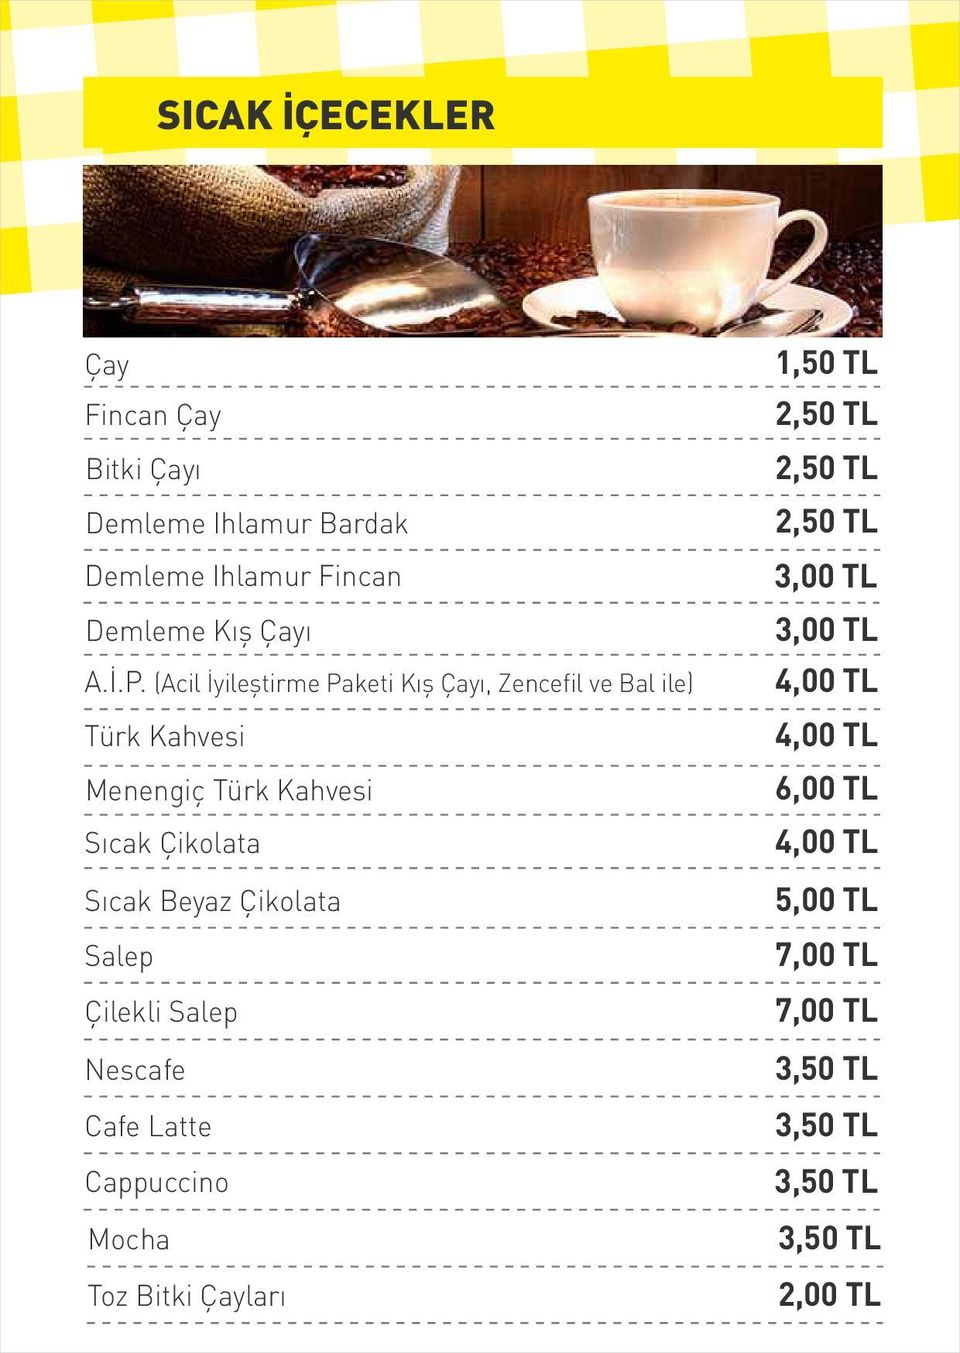 (Acil İyileştirme Paketi Kış Çayı, Zencefil ve Bal ile) 4,00 TL Türk Kahvesi 4,00 TL Menengiç